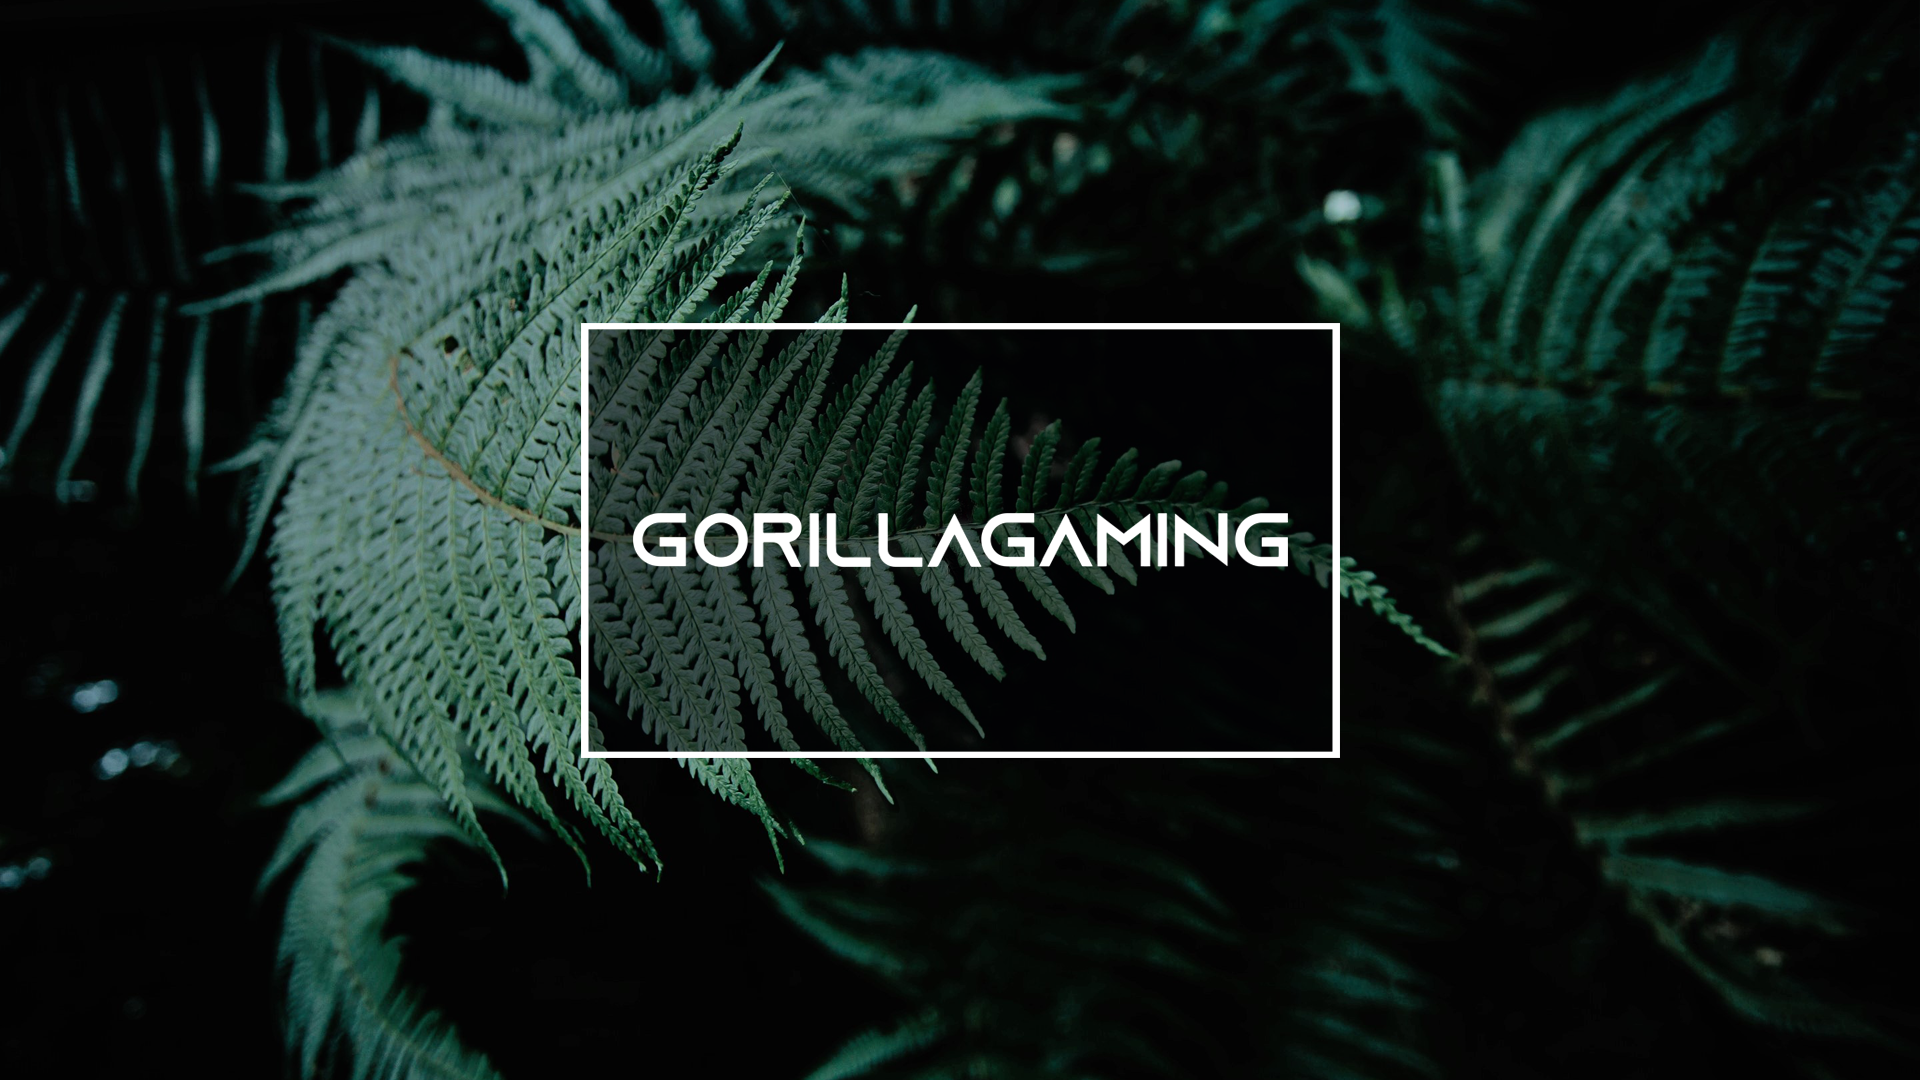 Baggrunde - Gorilla Gaming